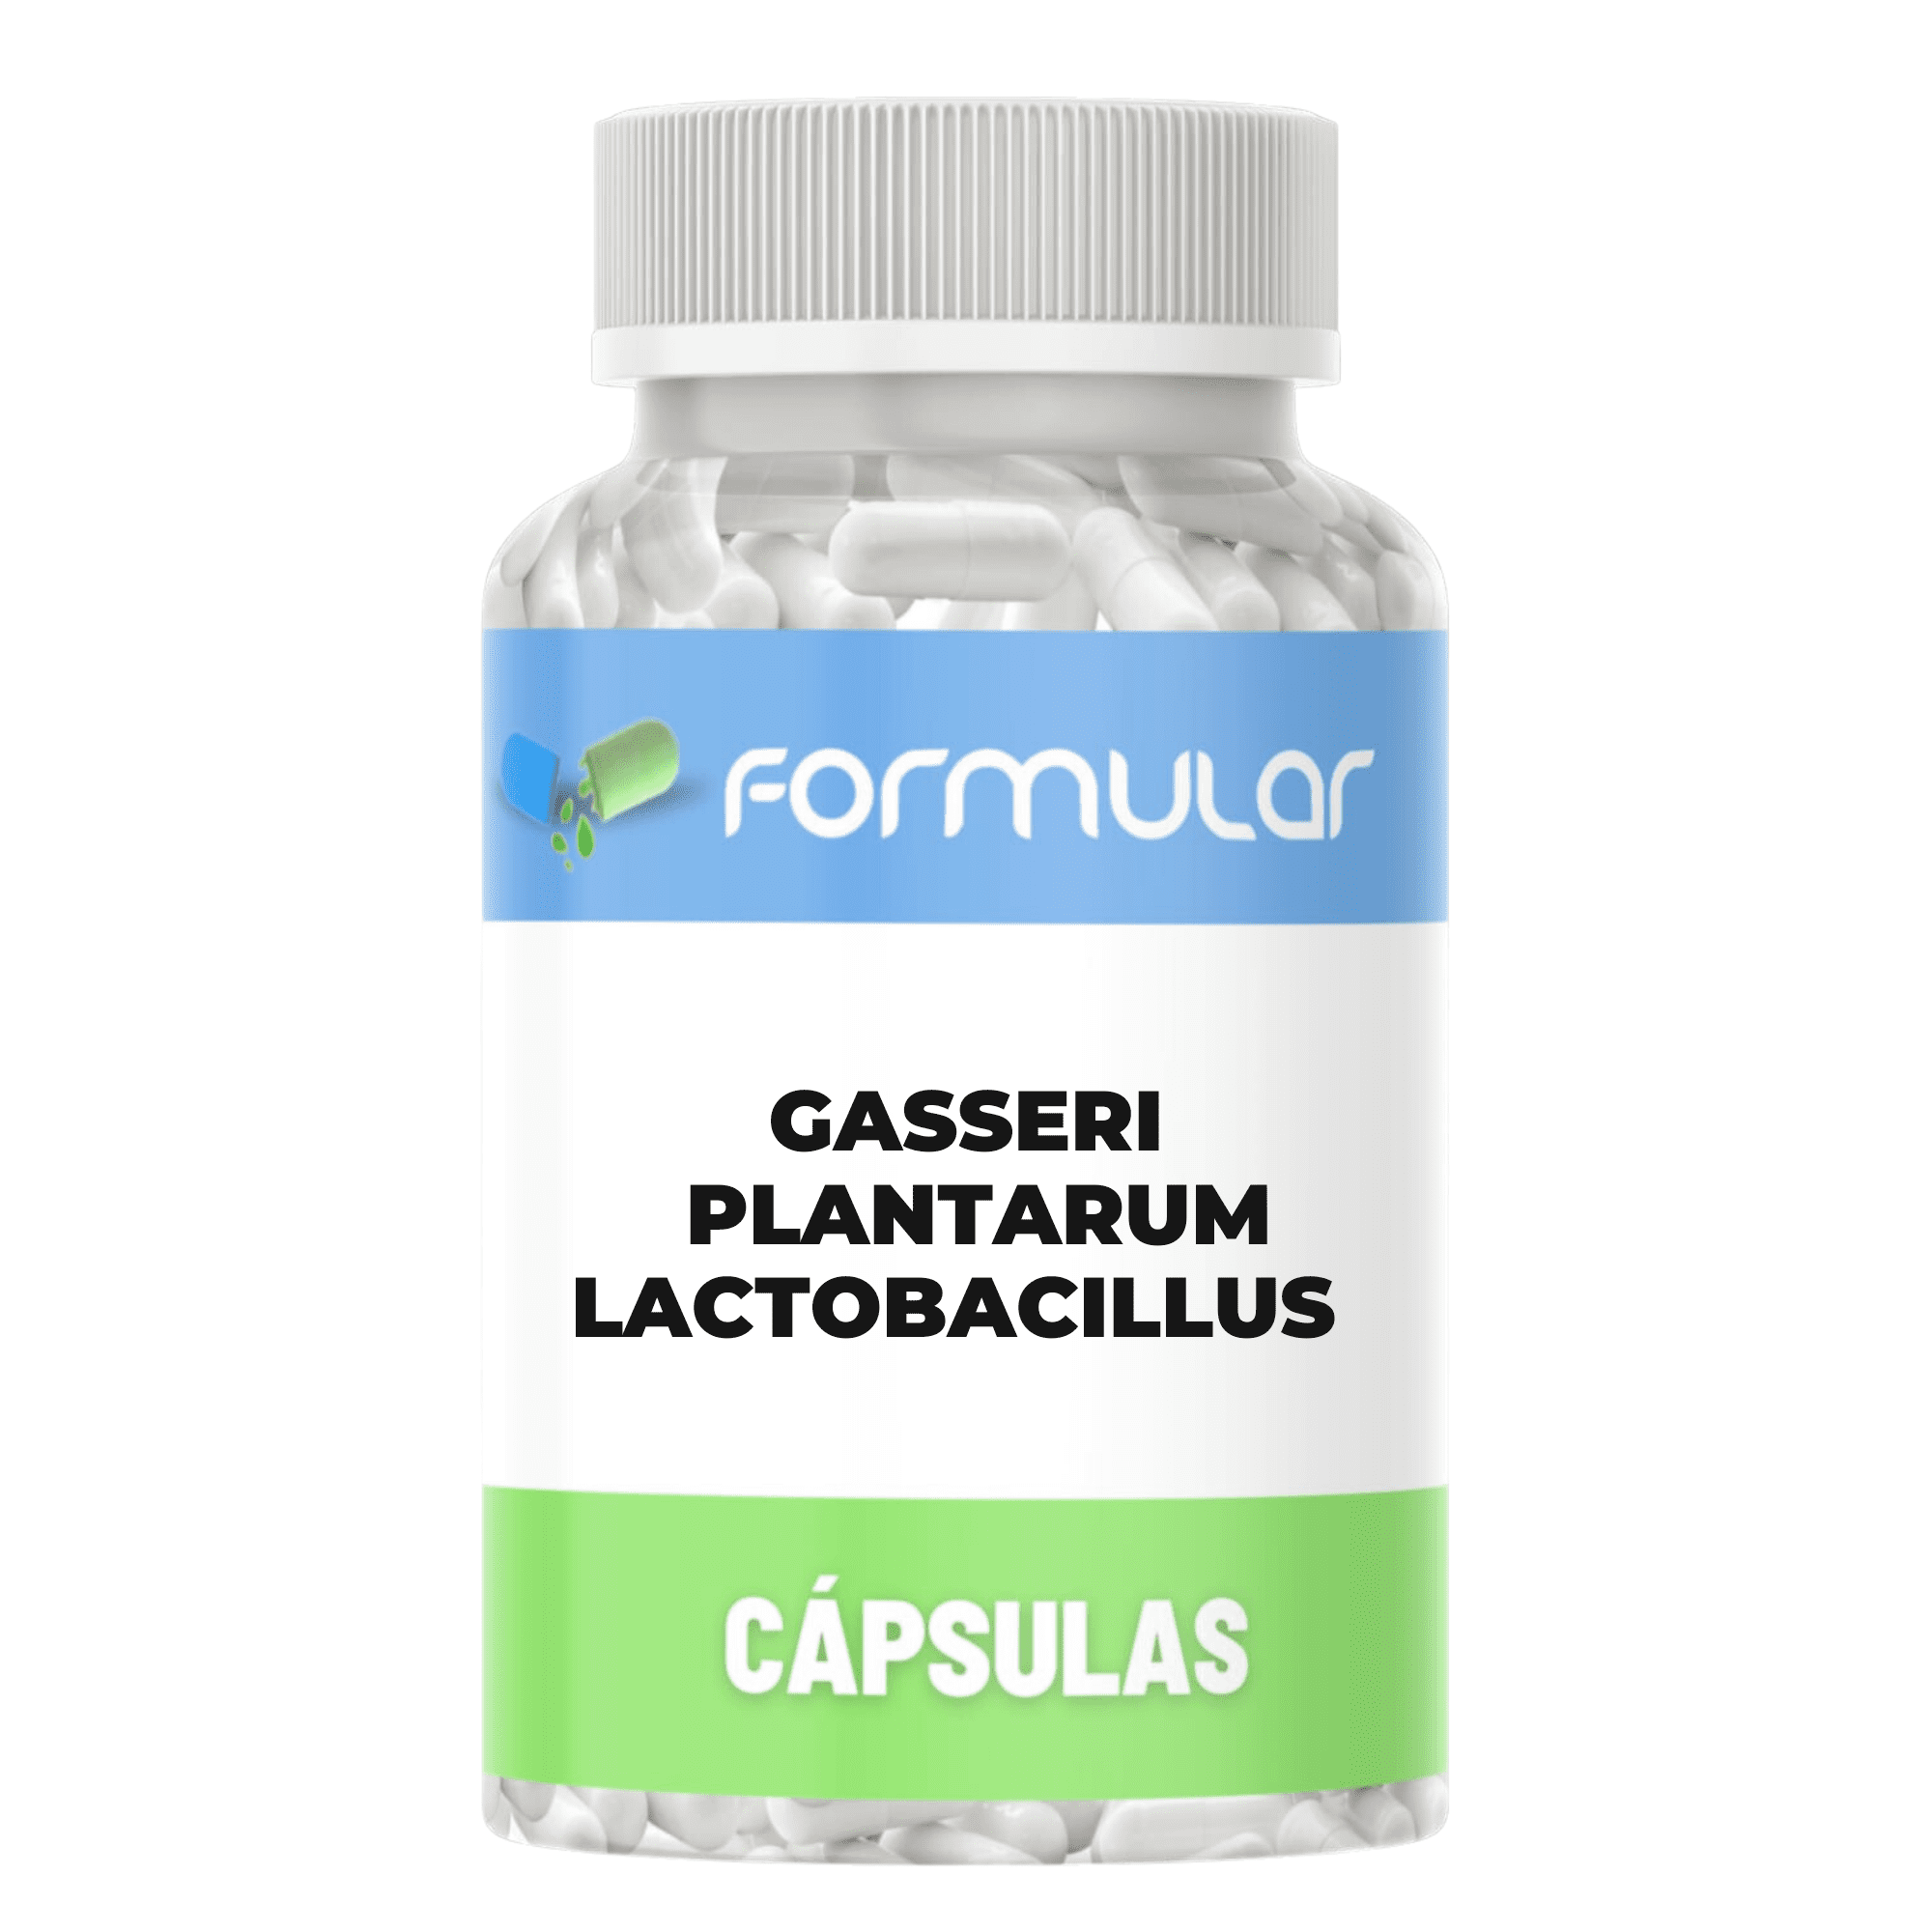 Gasseri + Plantarum - Lactobacillus - 5 Bilhões de Cada - Probióticos